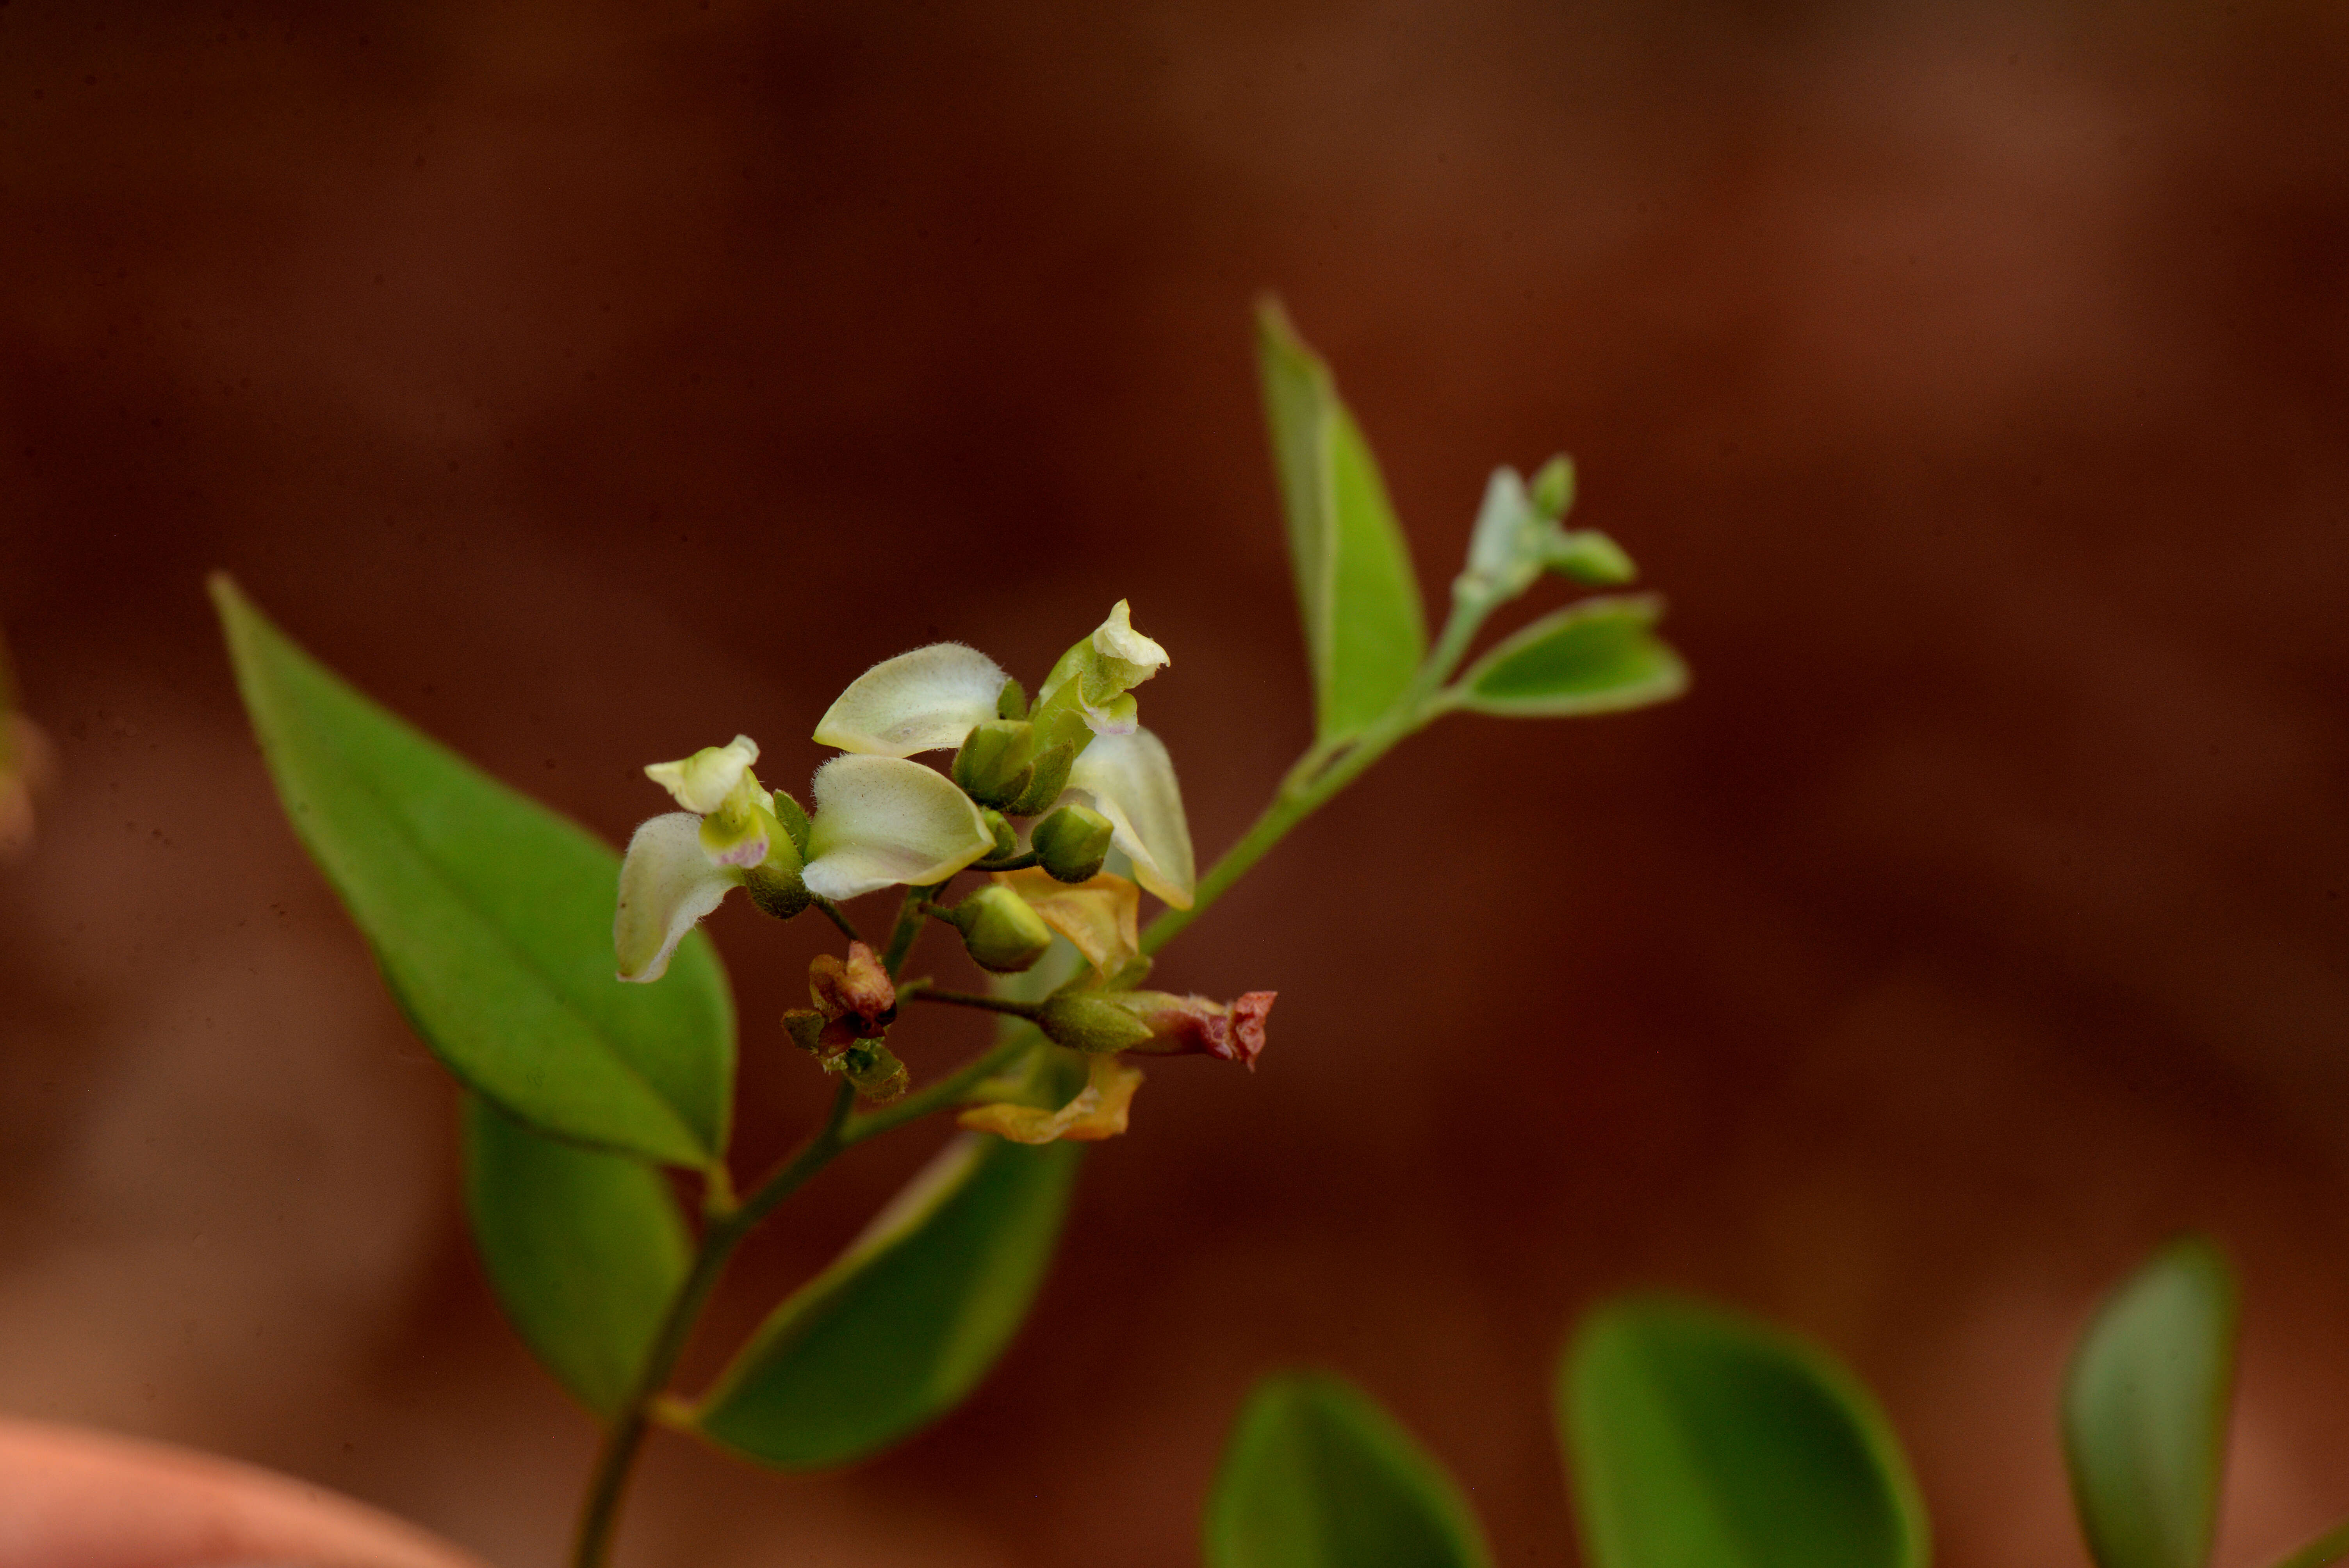 Image of Securidaca ovalifolia A. St.-Hil.